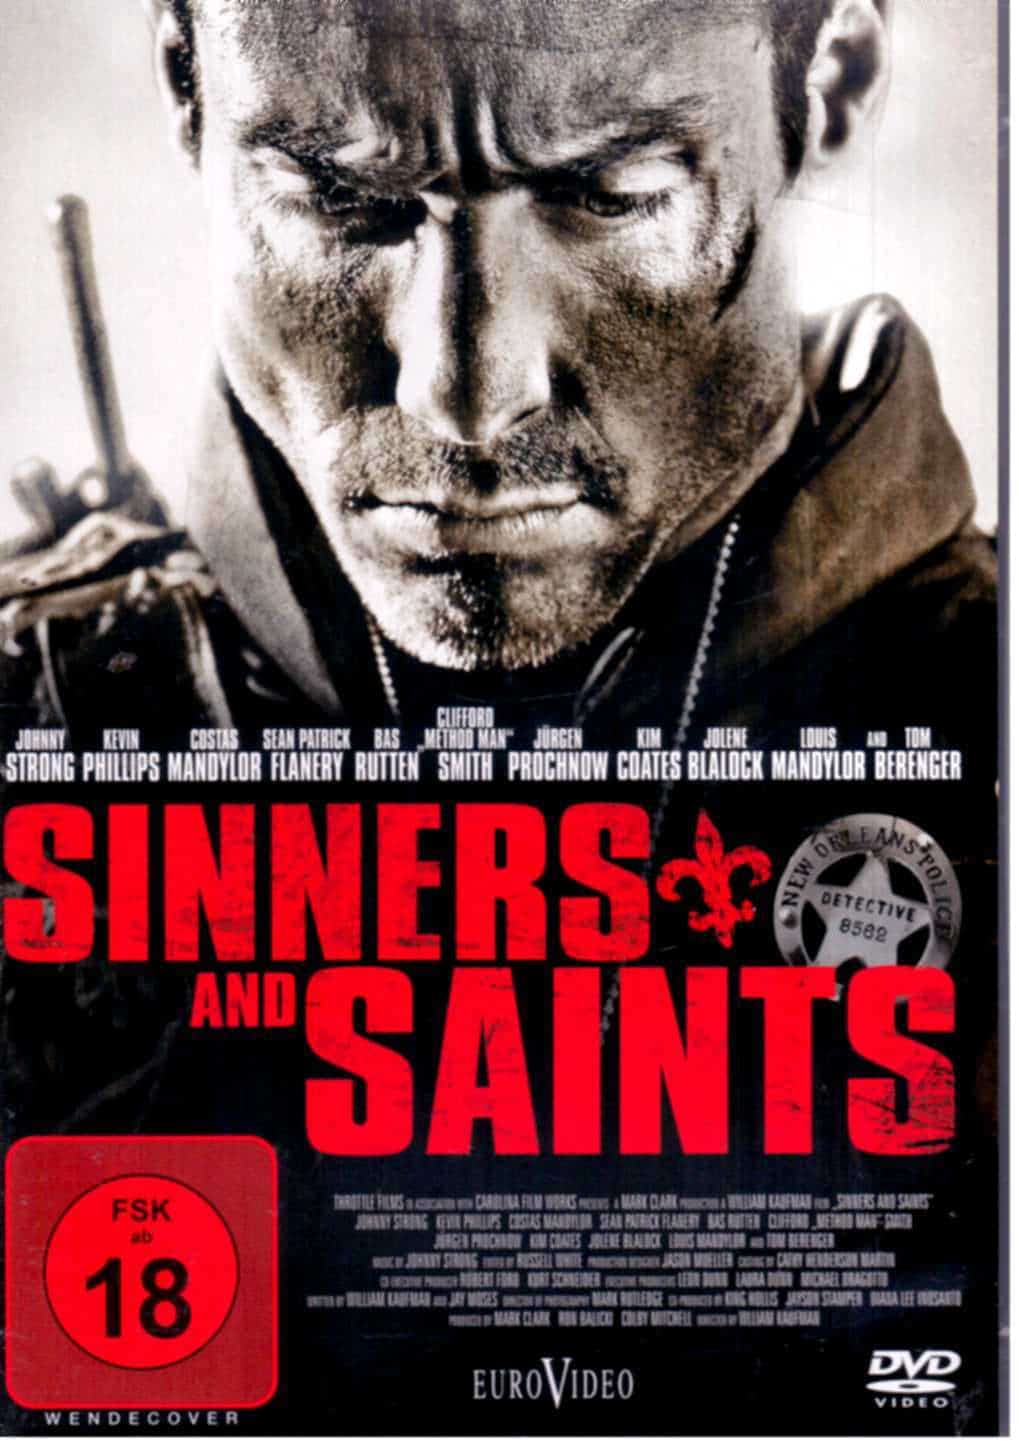 Plakat von "Sinners and Saints"